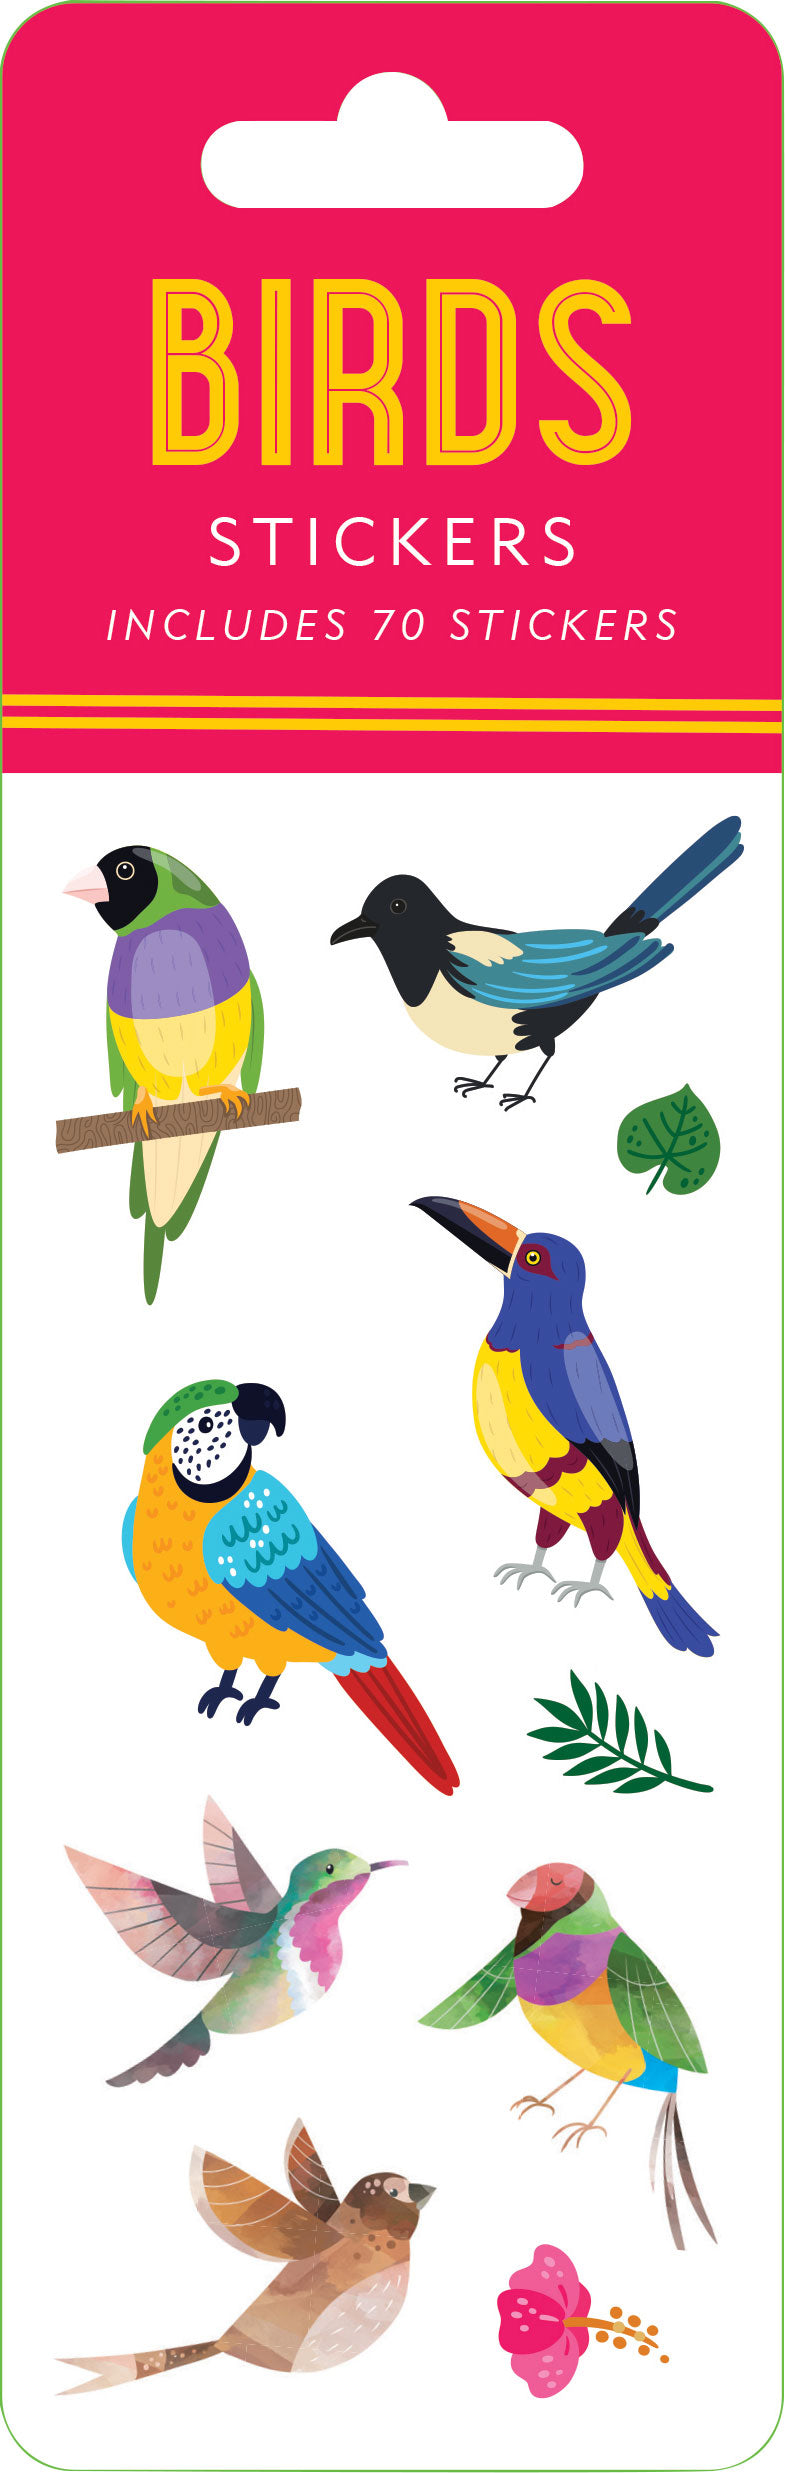 Golden Bird Stickers and State Birds Sticker Book vintage